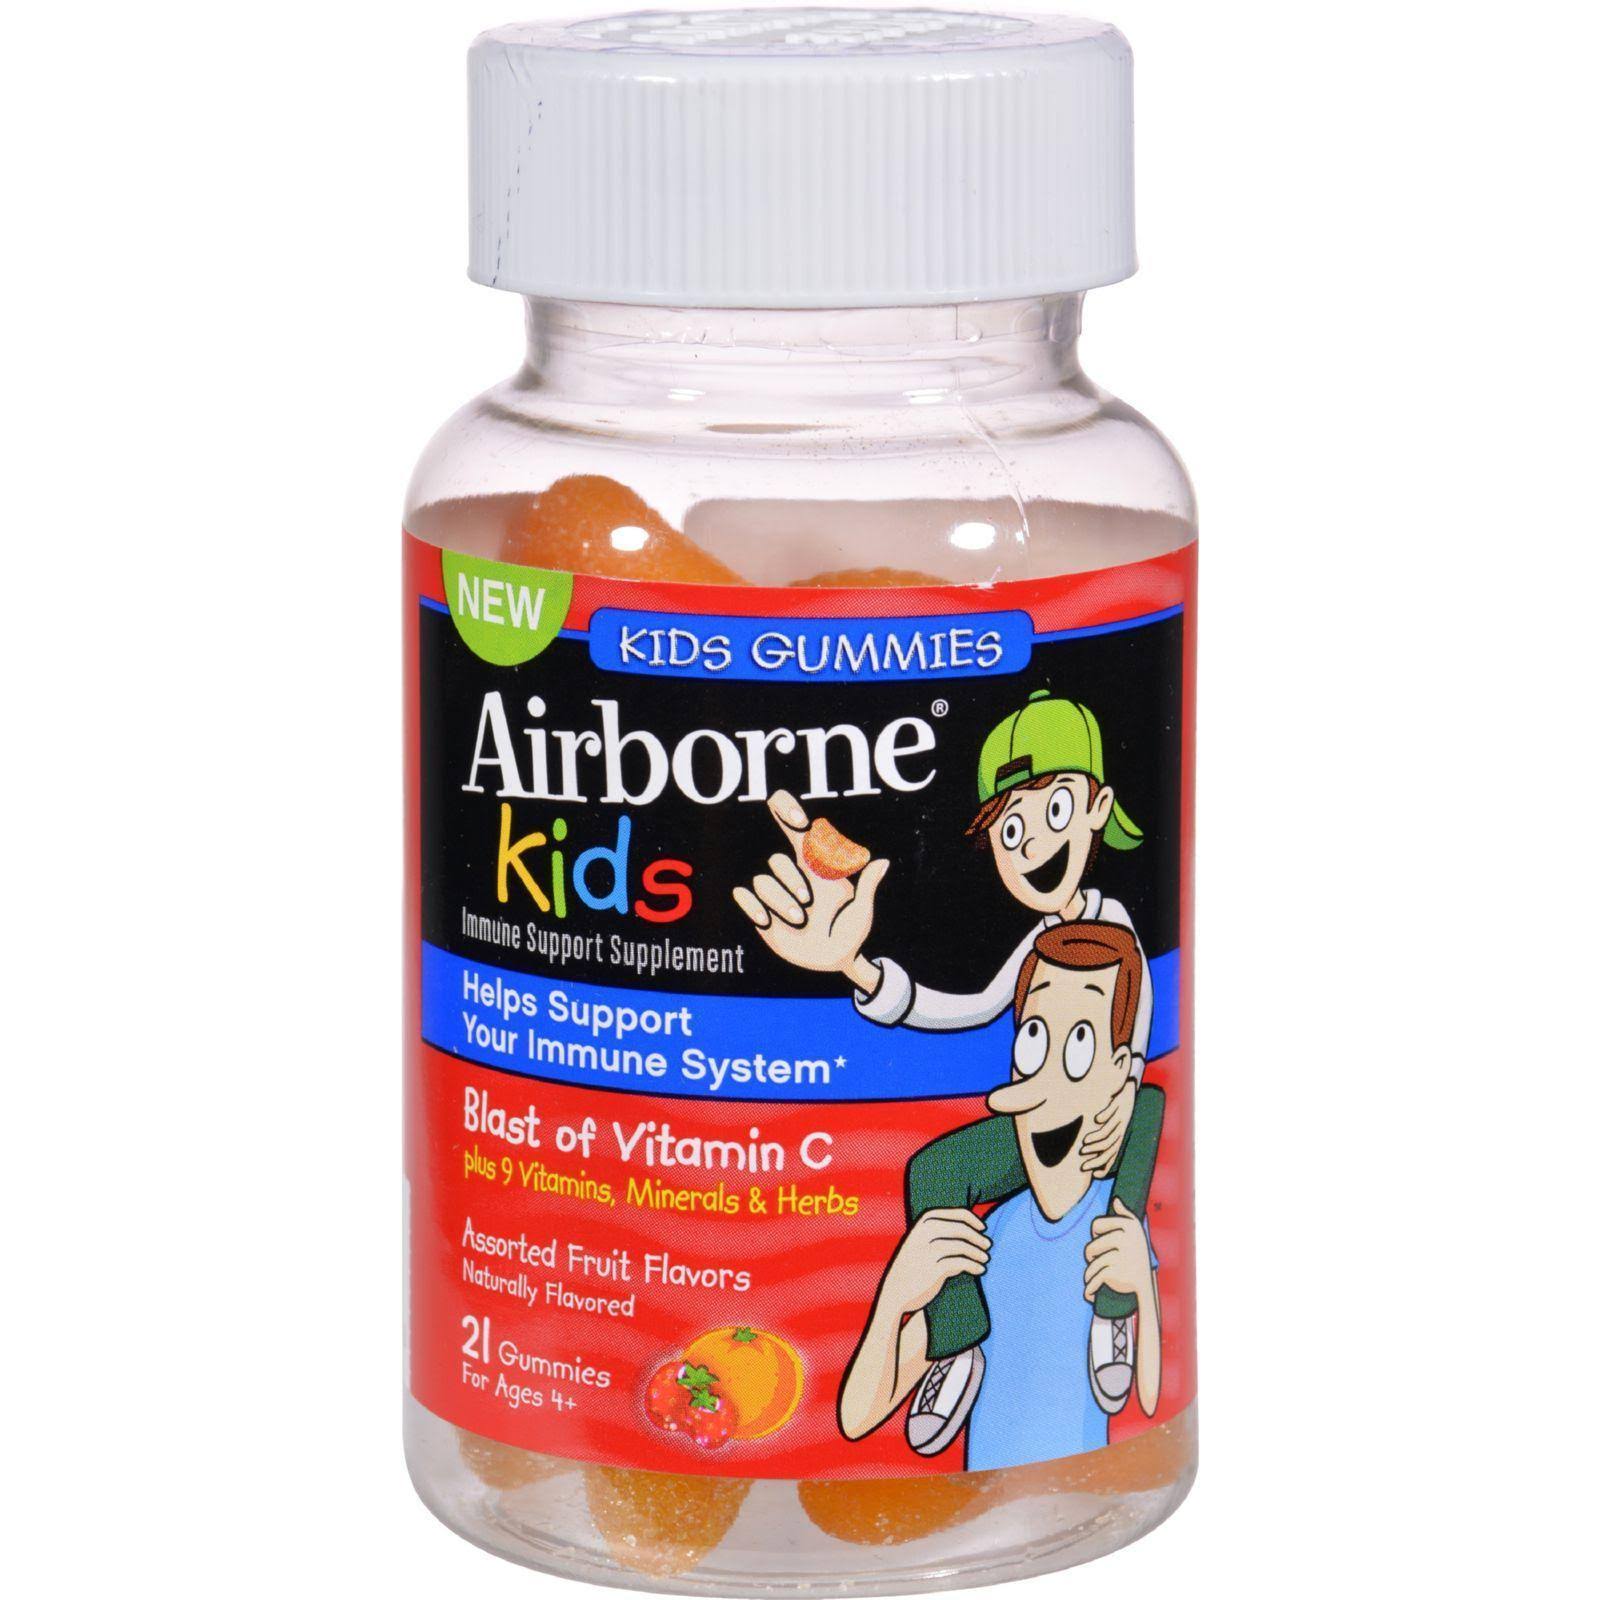 Airborne Kids Gummies Vitamin Immune Support Supplement - 667mg, 21 Gummies